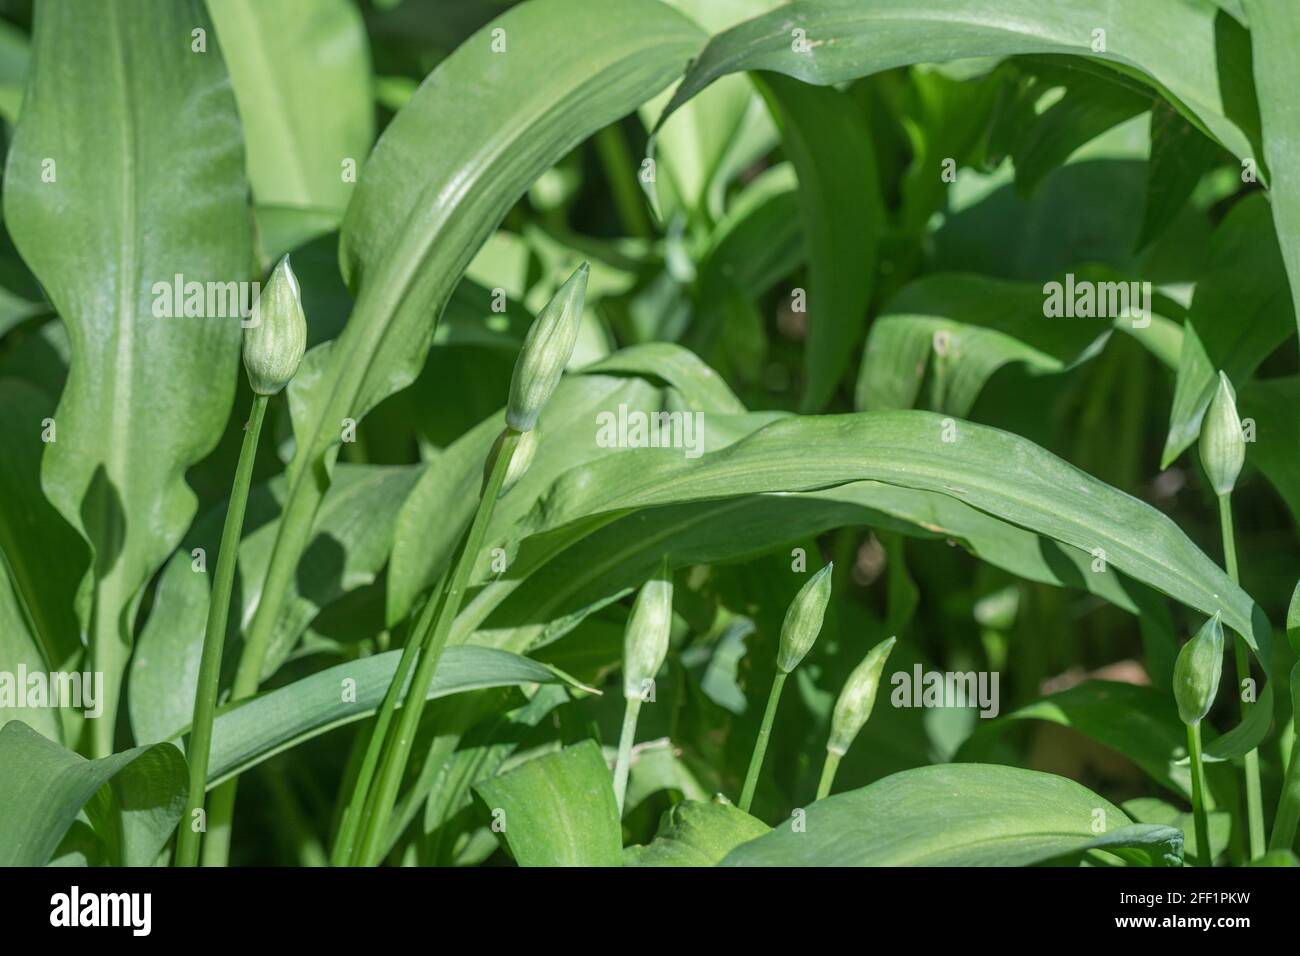 Boutons de fleurs vertes de l'ail sauvage appelé Ramsons / Allium ursinum. Un vert sauvage comestible et savoureux, autrefois utilisé comme plante médicinale. Banque D'Images